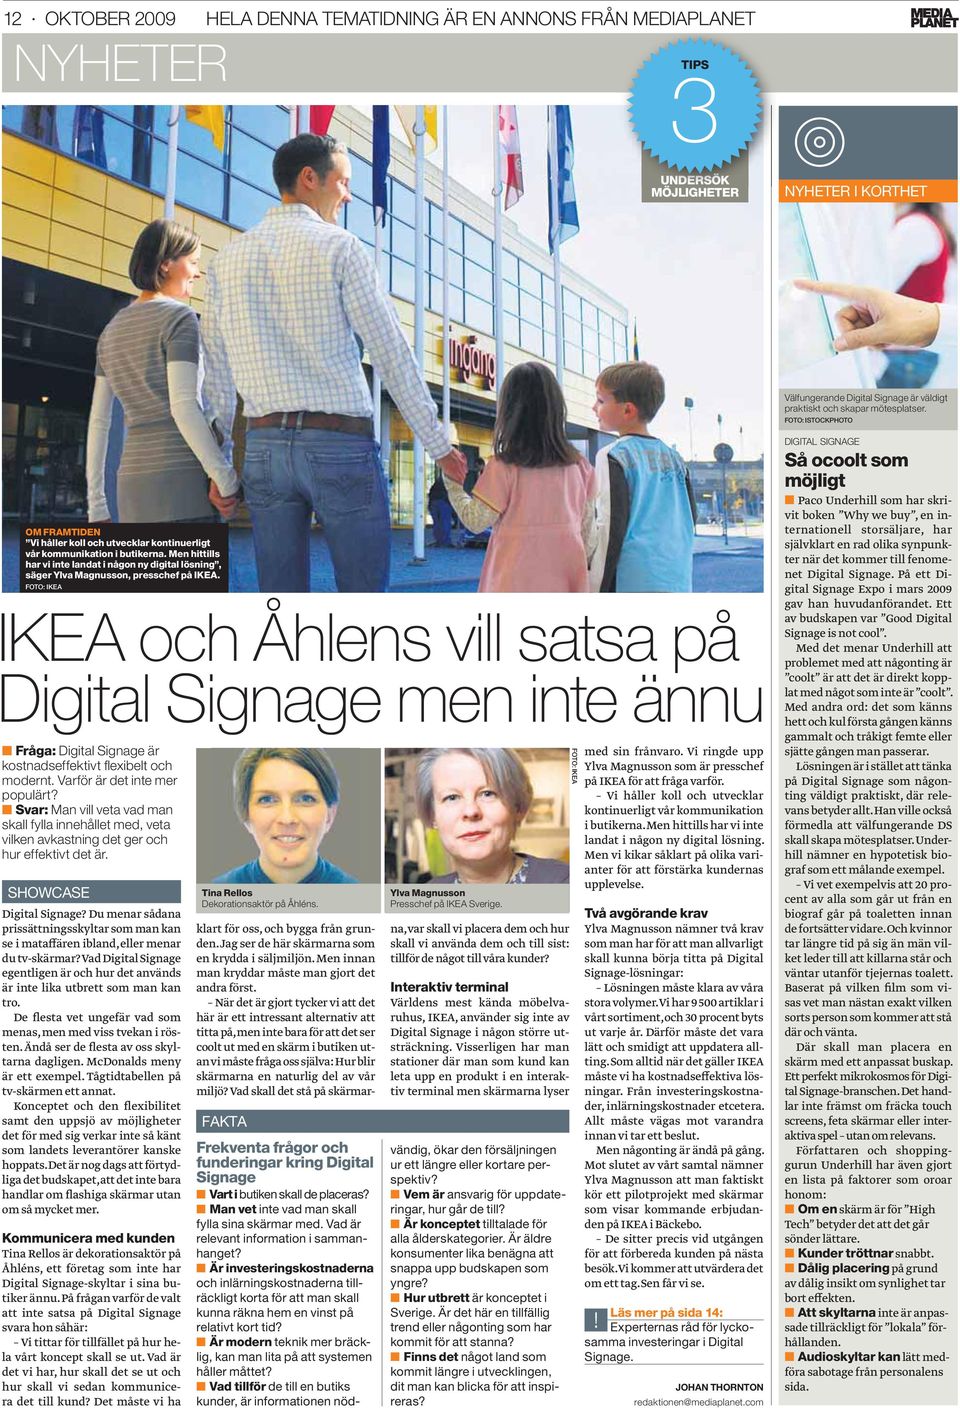 Men hittills har vi inte landat i någon ny digital lösning, säger Ylva Magnusson, presschef på IKEA.